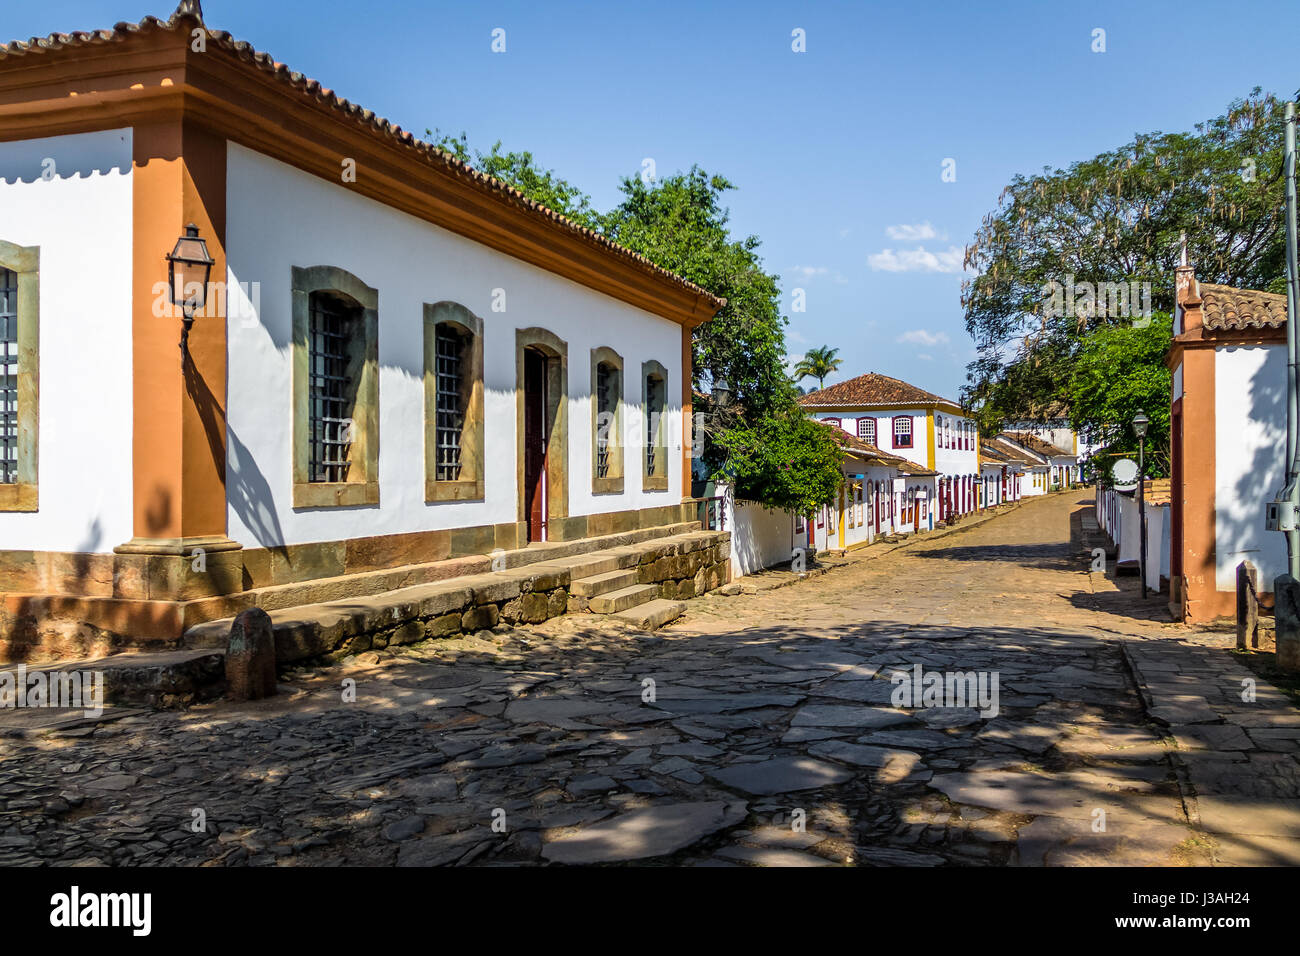 Bunten Häusern im Kolonialstil und Straße mit Kopfsteinpflaster - Tiradentes, Minas Gerais, Brasilien Stockfoto